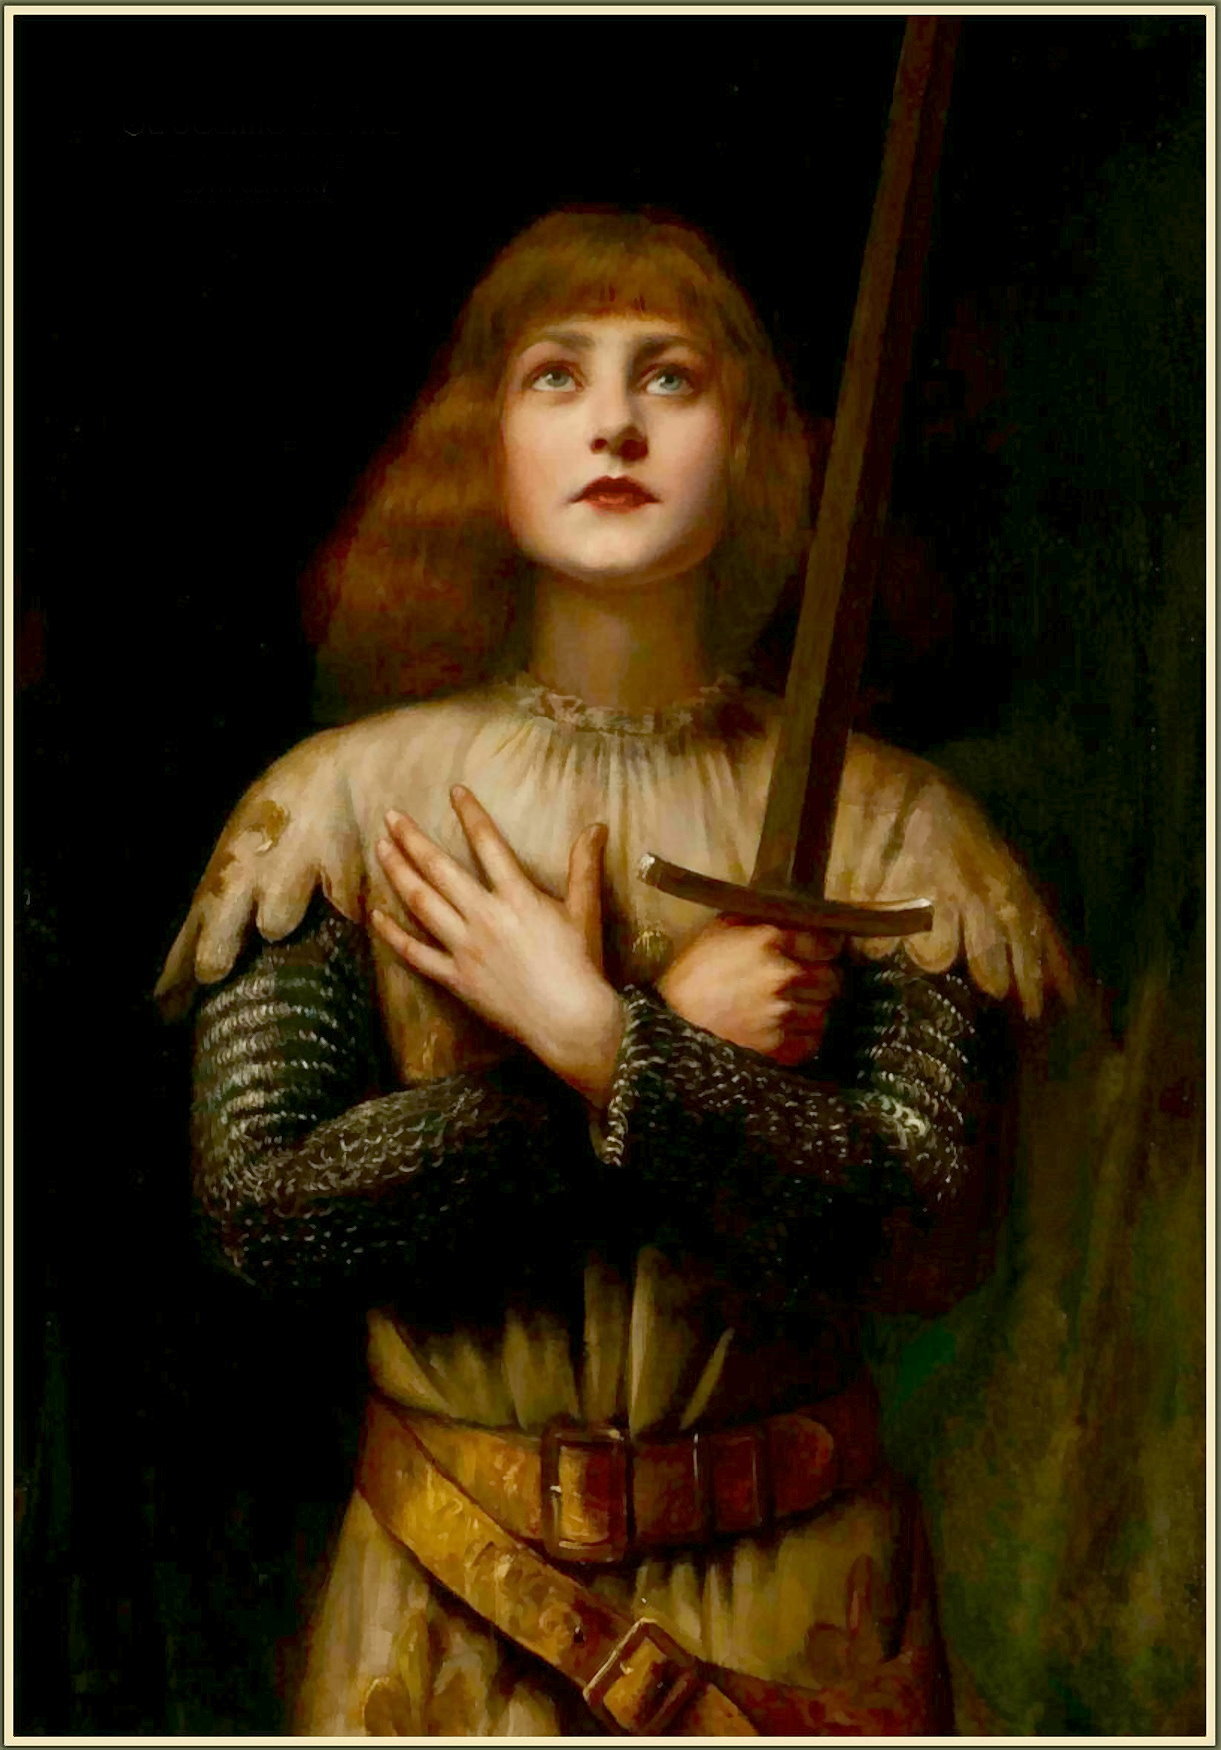 'Jeanne de Arc' (19th century) by Paul La Boulaye